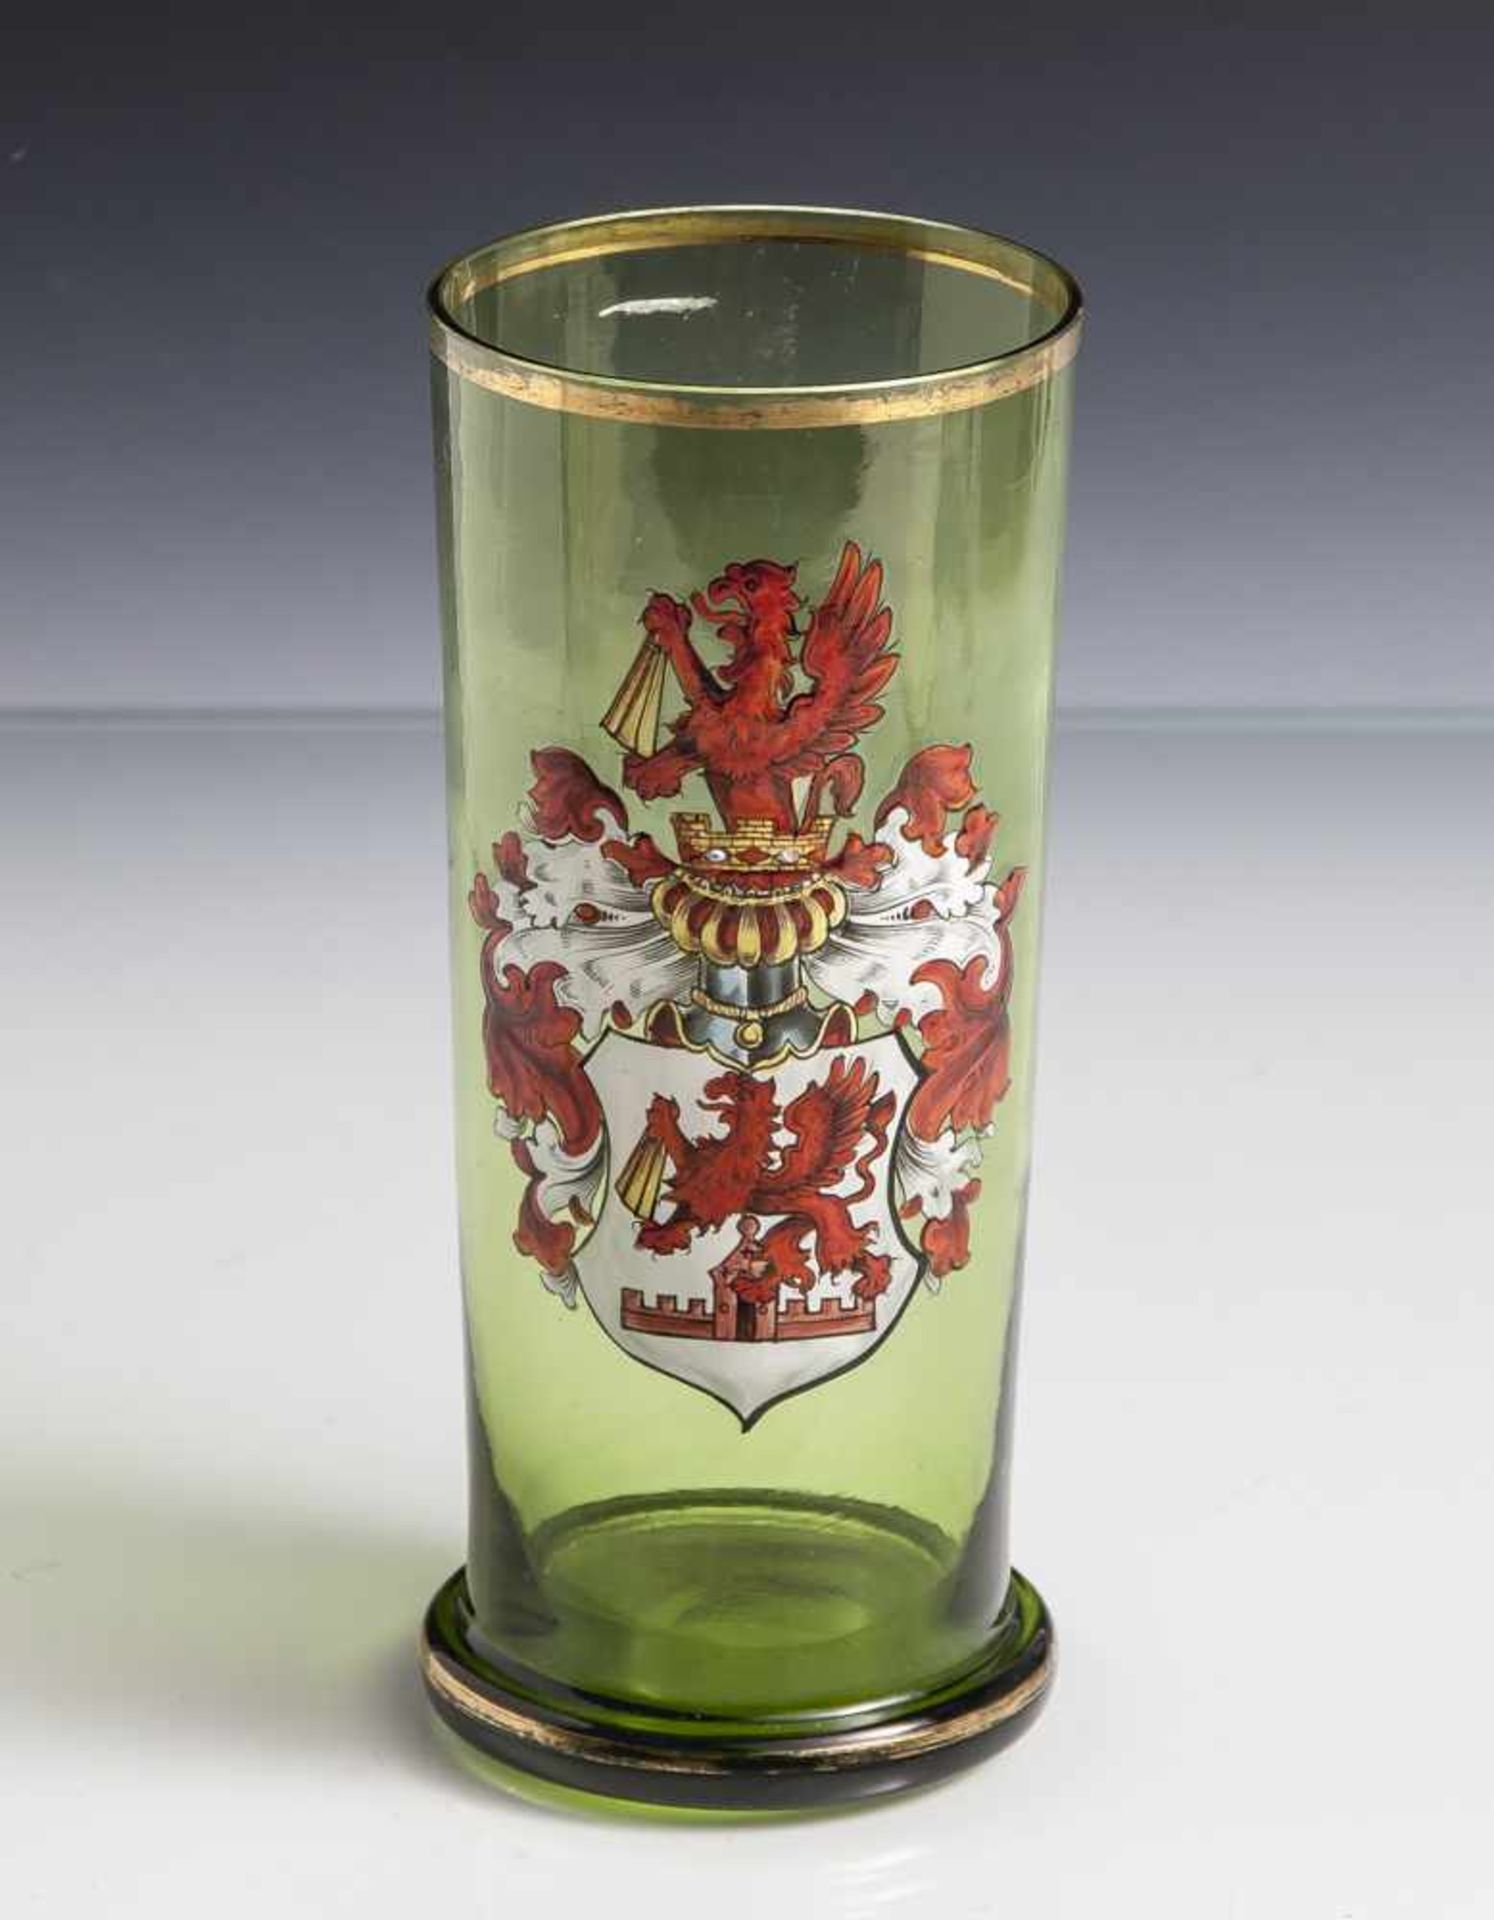 Wappenglas, Historismus, grünes Glas, zylindrische Form mit Standring, Goldrand. Auf der